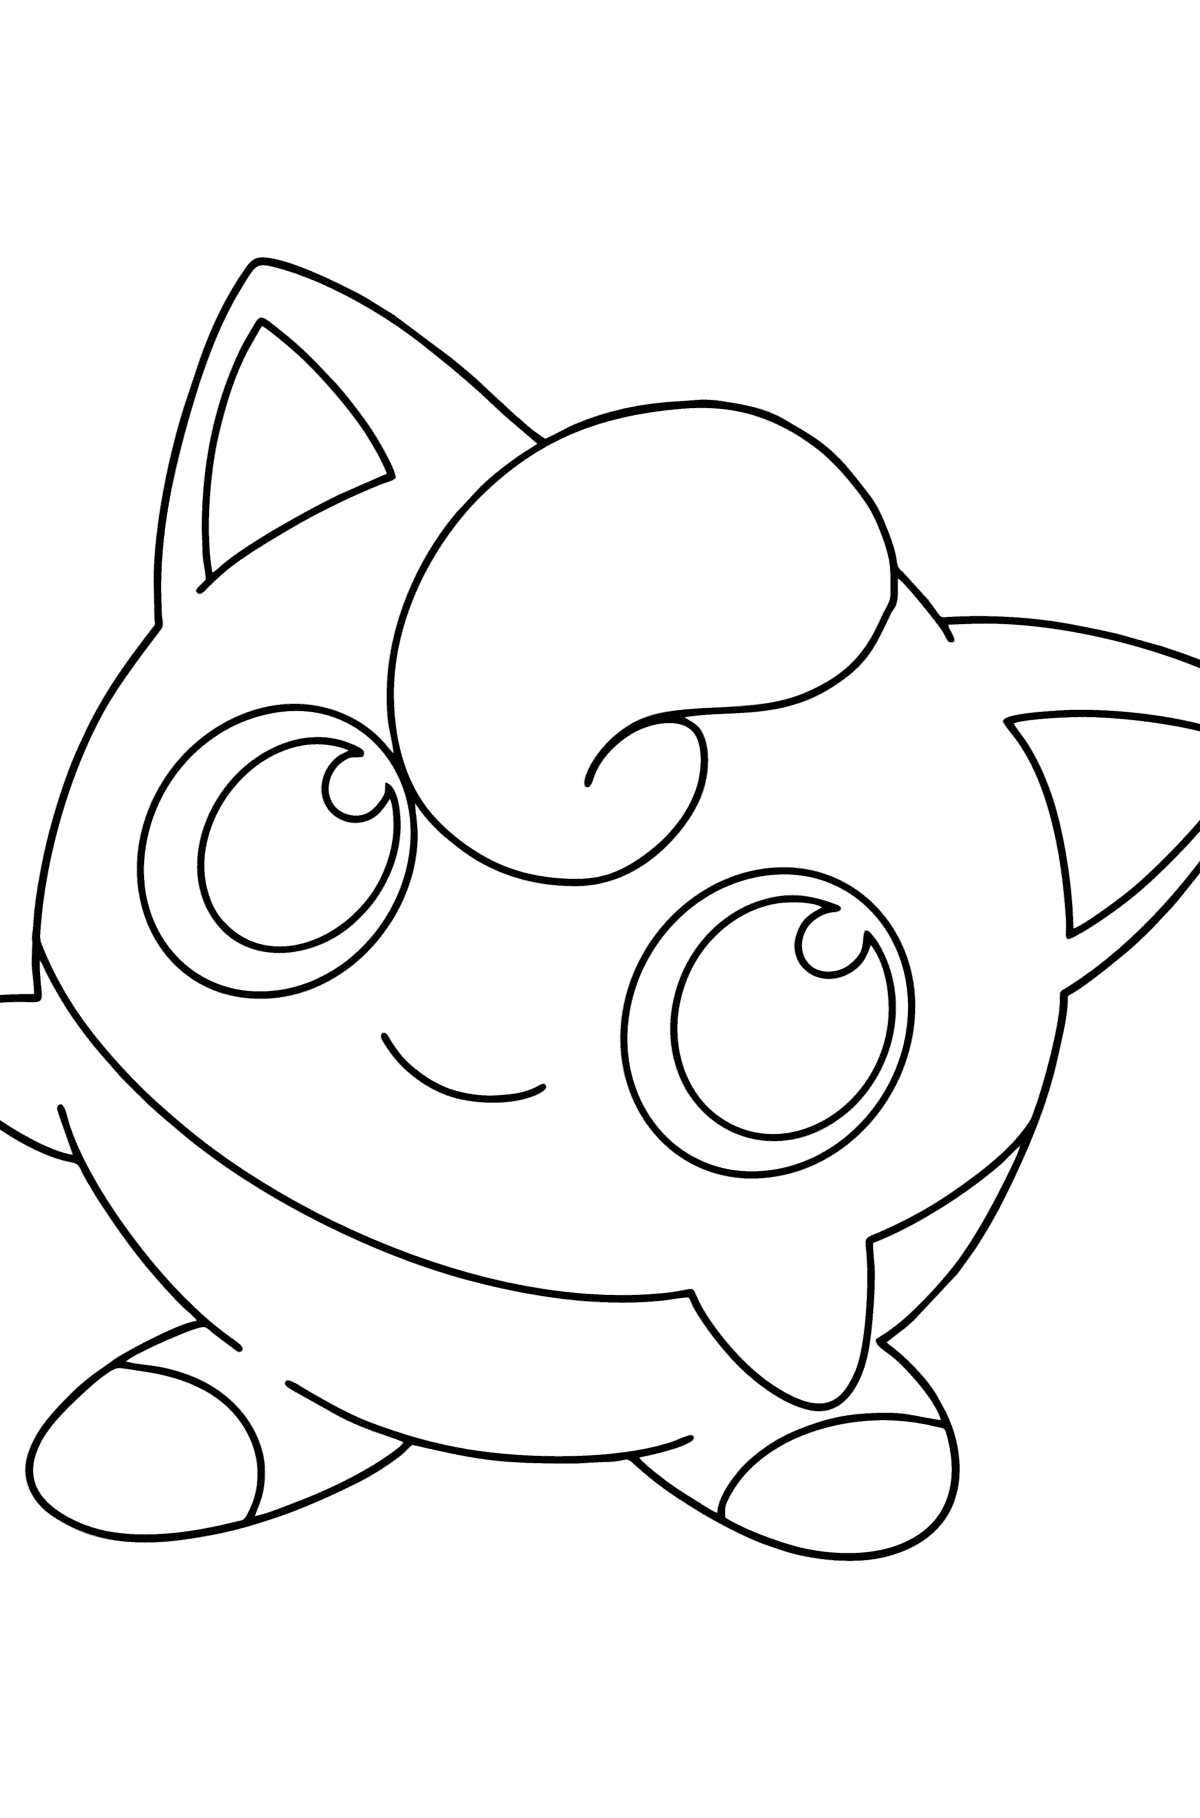 Раскраска Покемон (Pokemon Go) Jigglypuff - Картинки для Детей